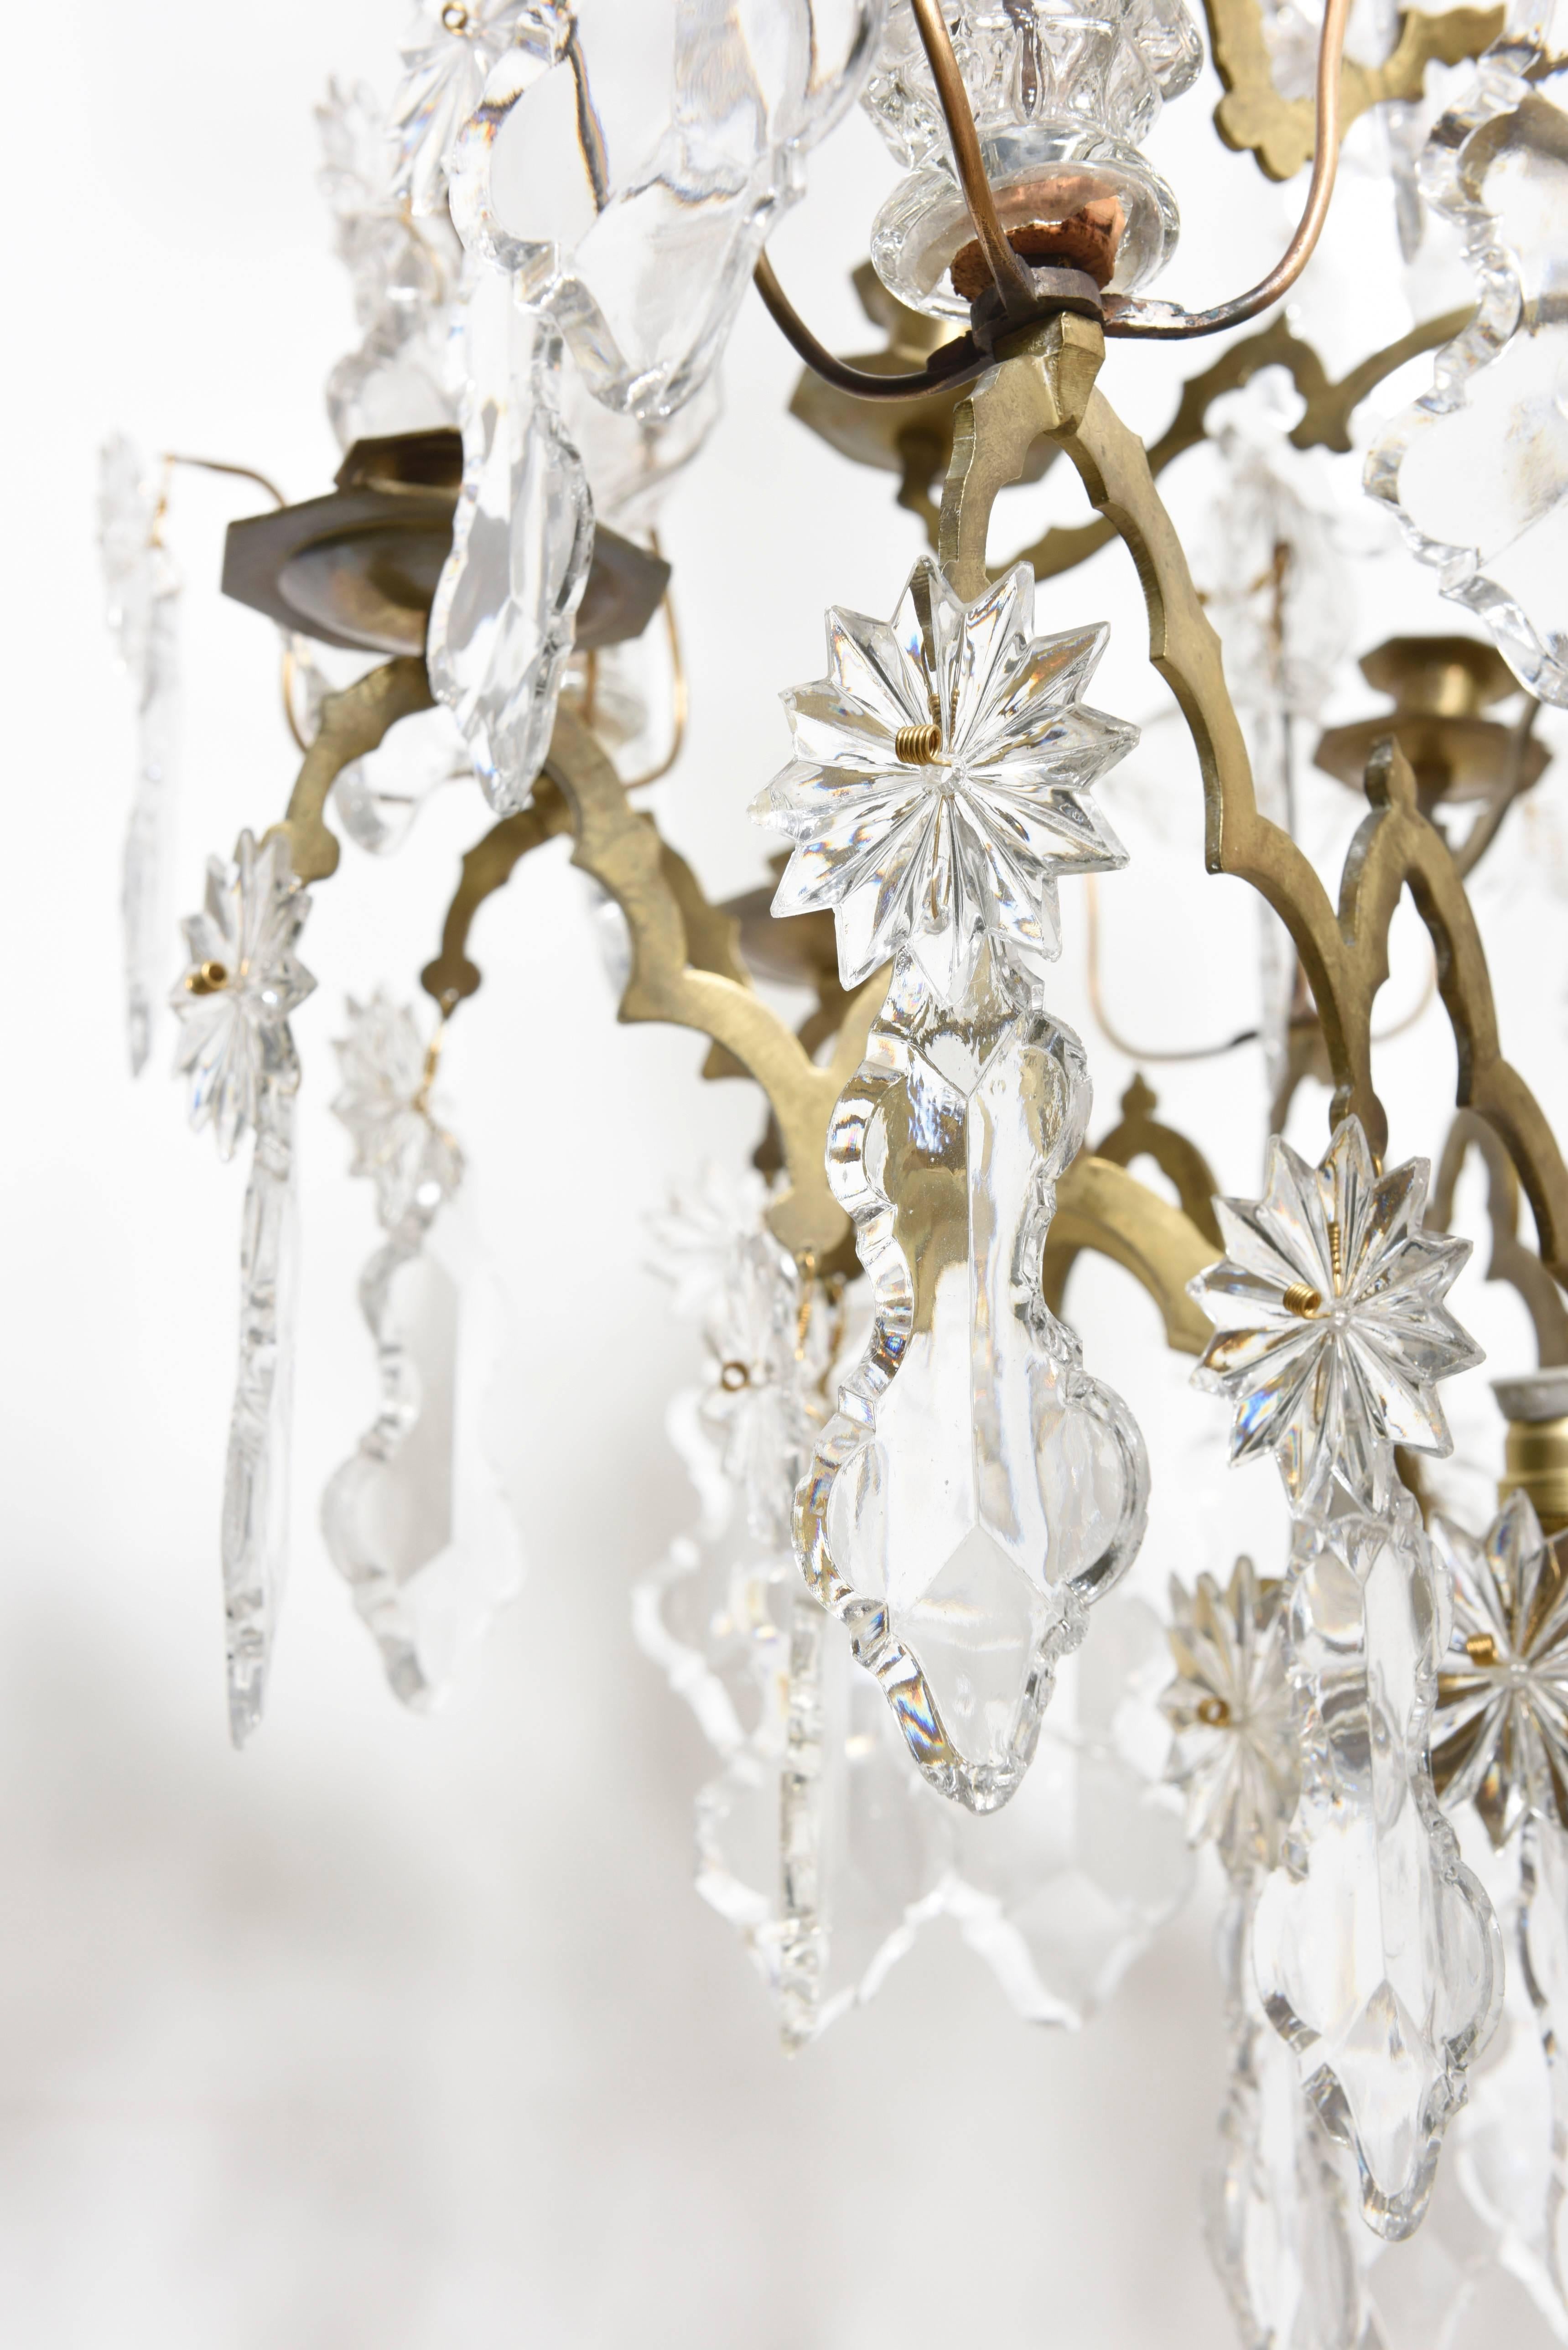 Grand lustre Louis XV en bronze doré et cristal à douze branches avec cristaux taillés, plaques, rosettes et gouttes à facettes. La tige étonnante et élégante s'élève vers une gerbe de fleurs et de cascades qui retombent en cascade avec des éclats